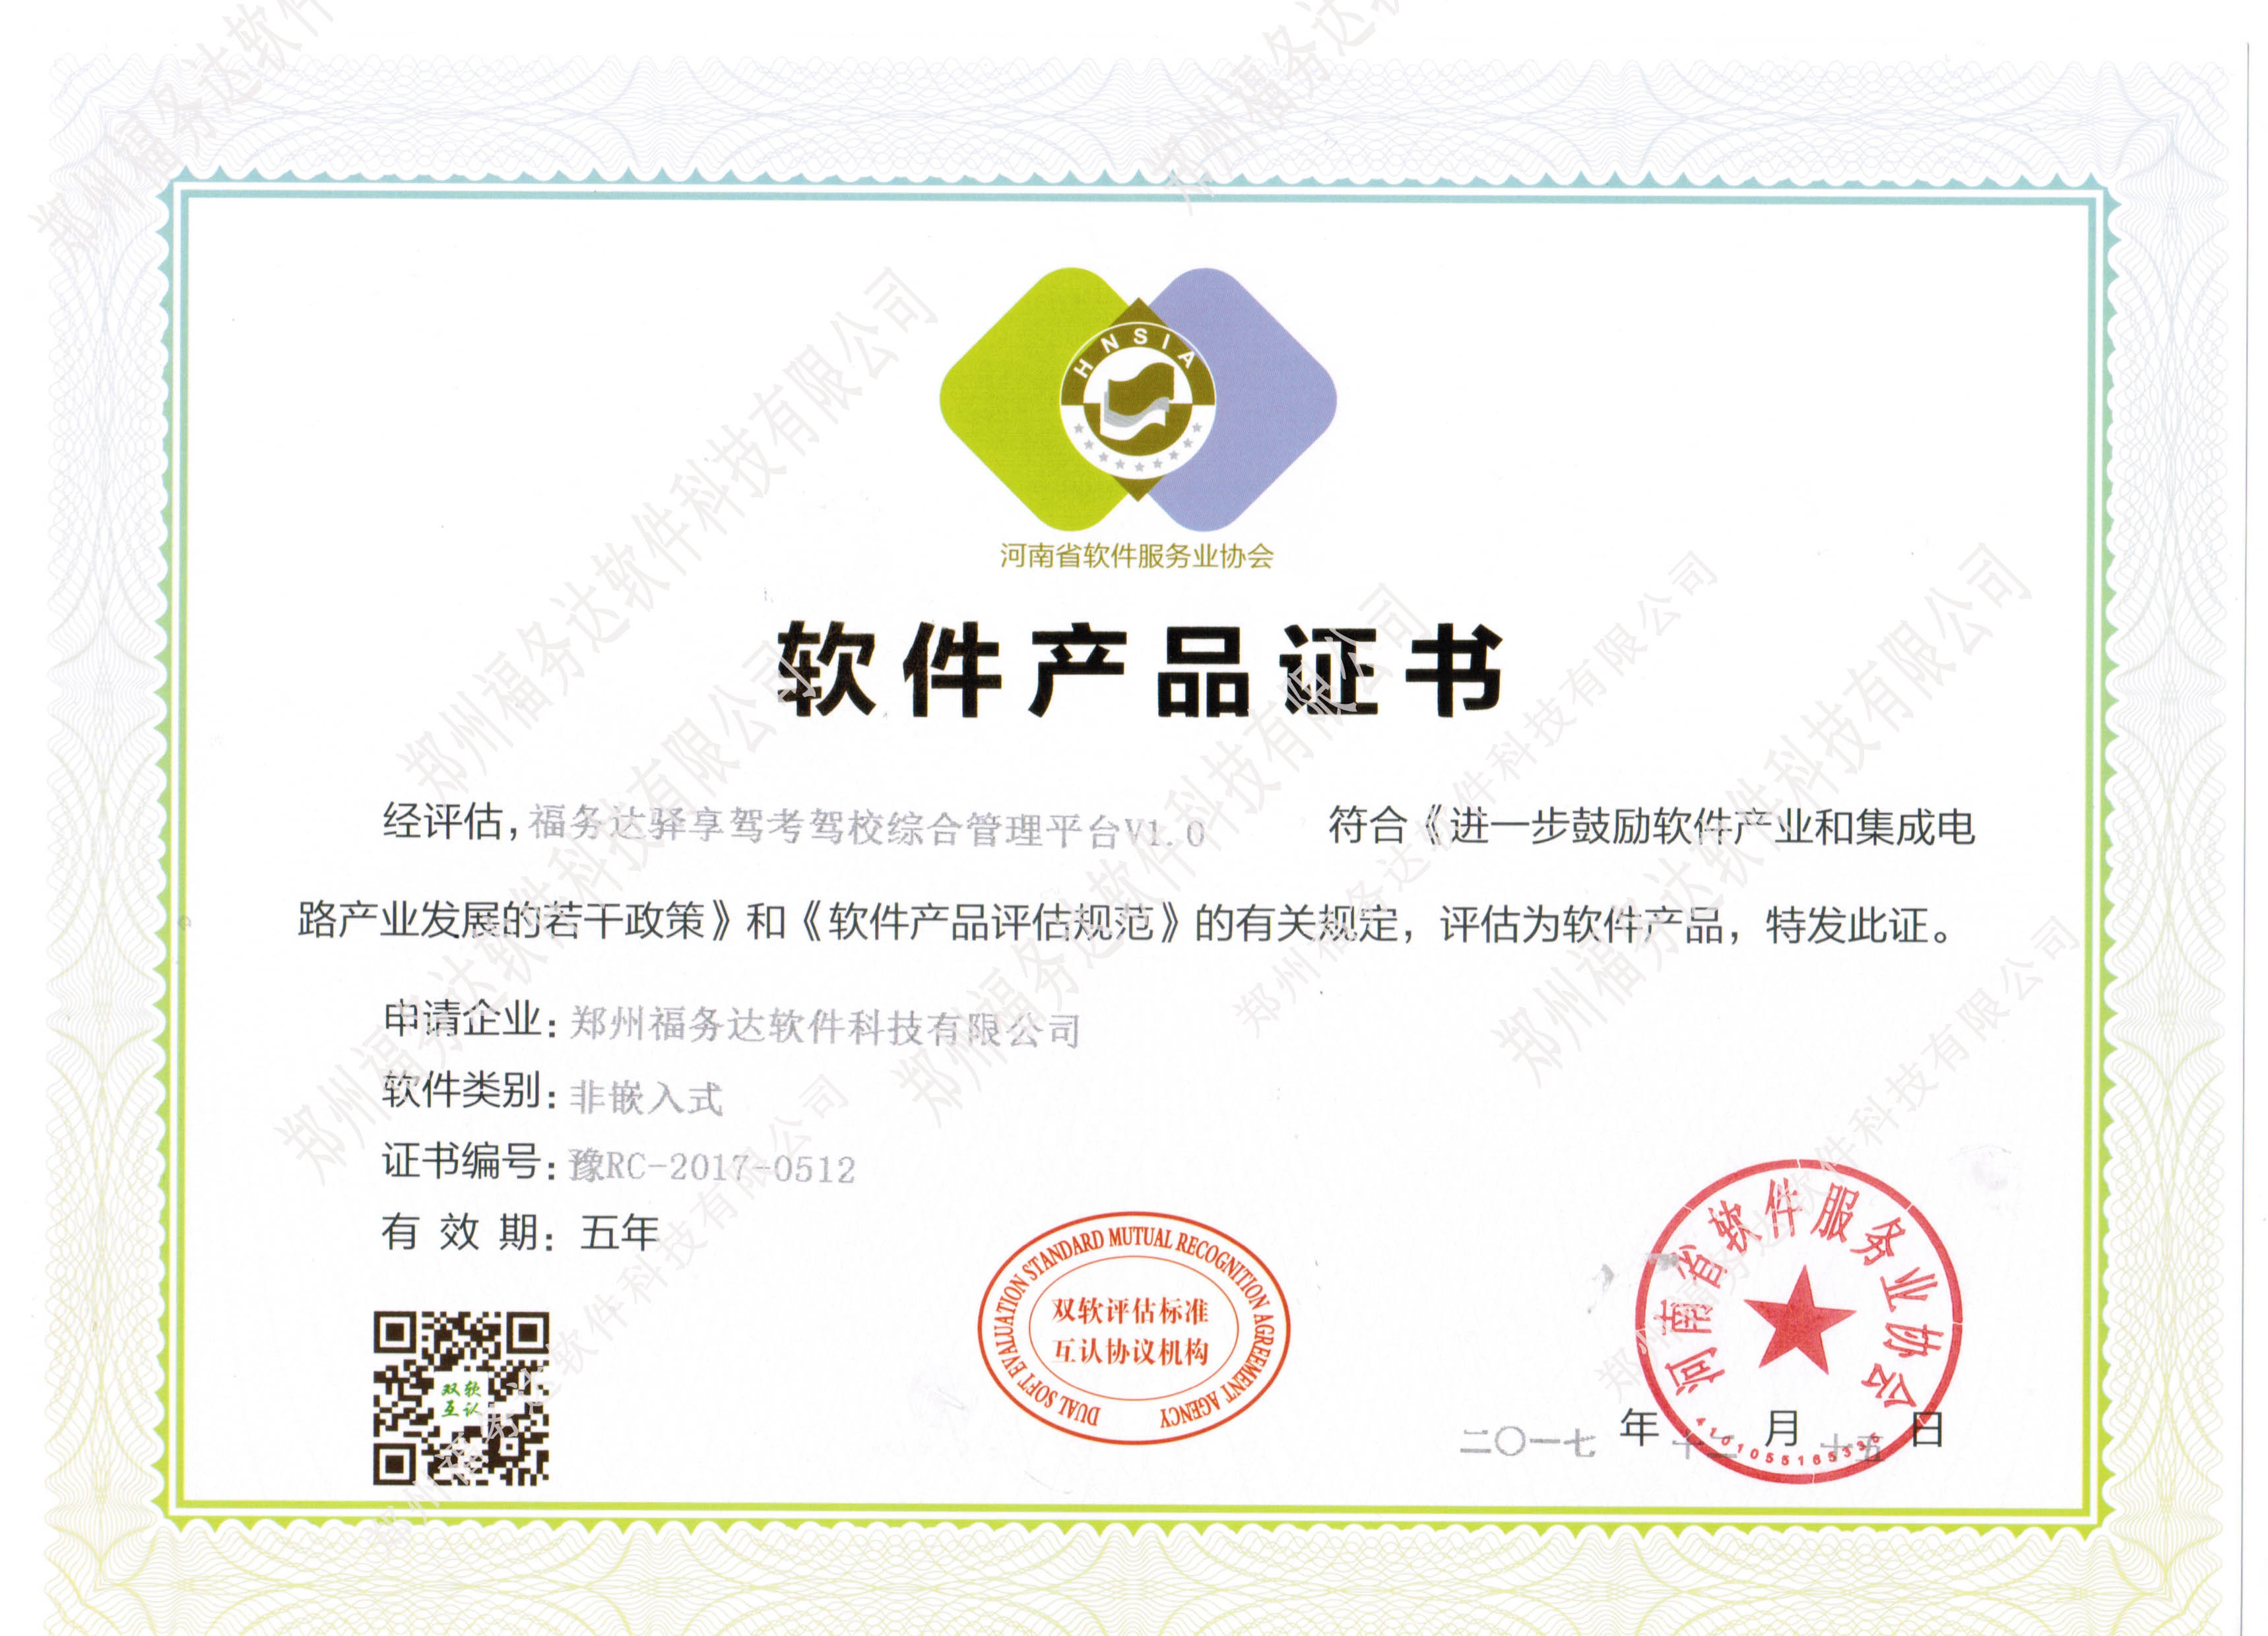 恭喜郑州福务达软件科技有限公司“软件产品认证”顺利通过